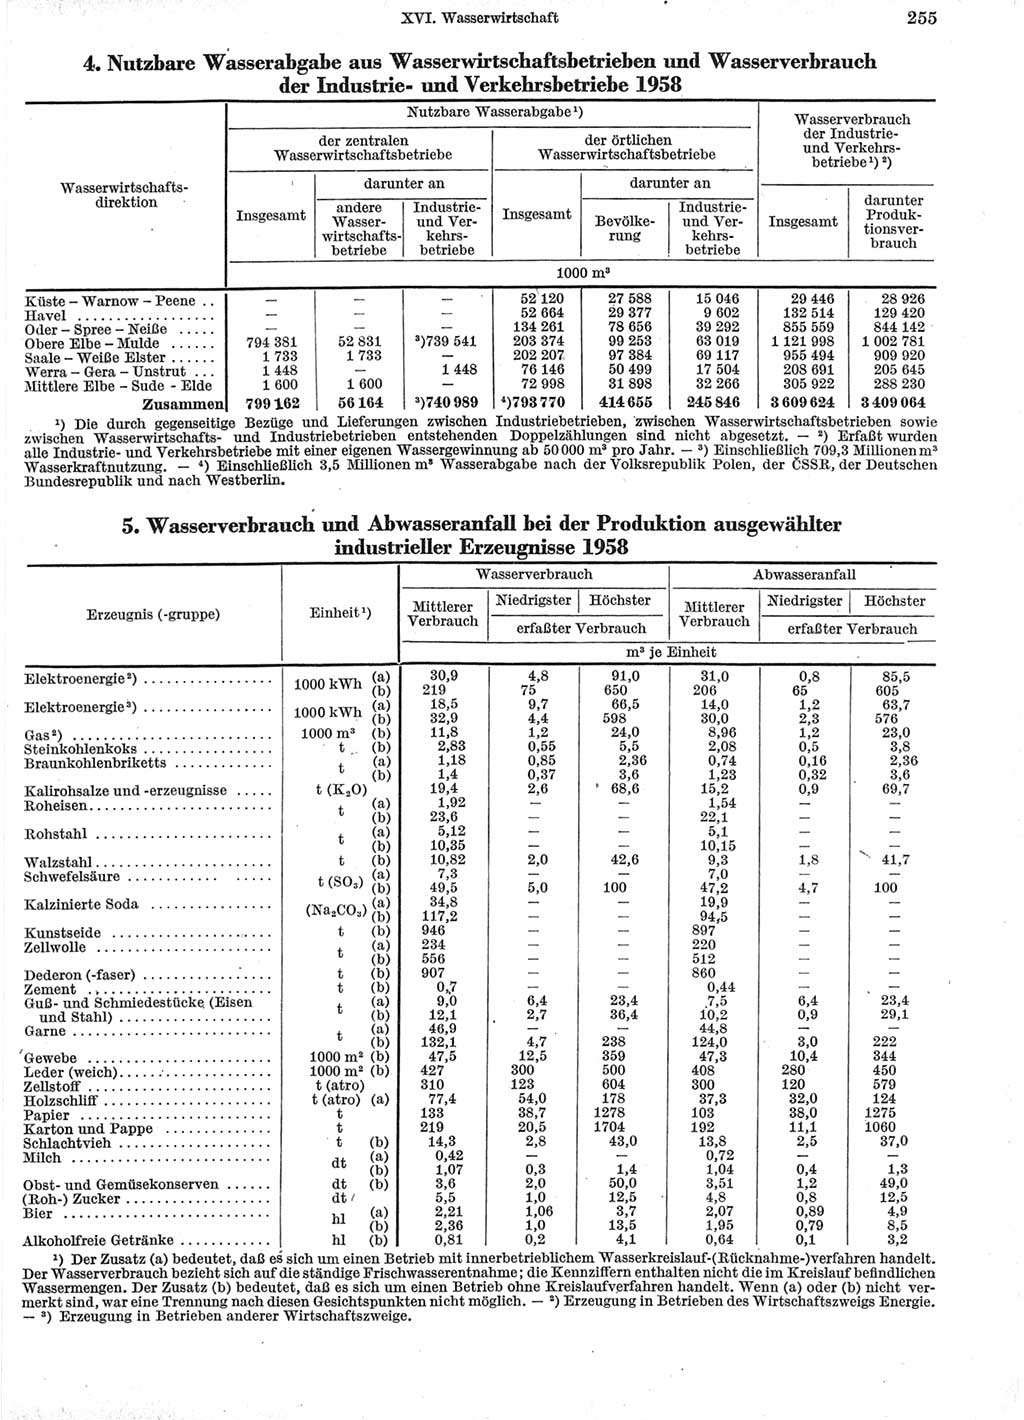 Statistisches Jahrbuch der Deutschen Demokratischen Republik (DDR) 1960-1961, Seite 255 (Stat. Jb. DDR 1960-1961, S. 255)